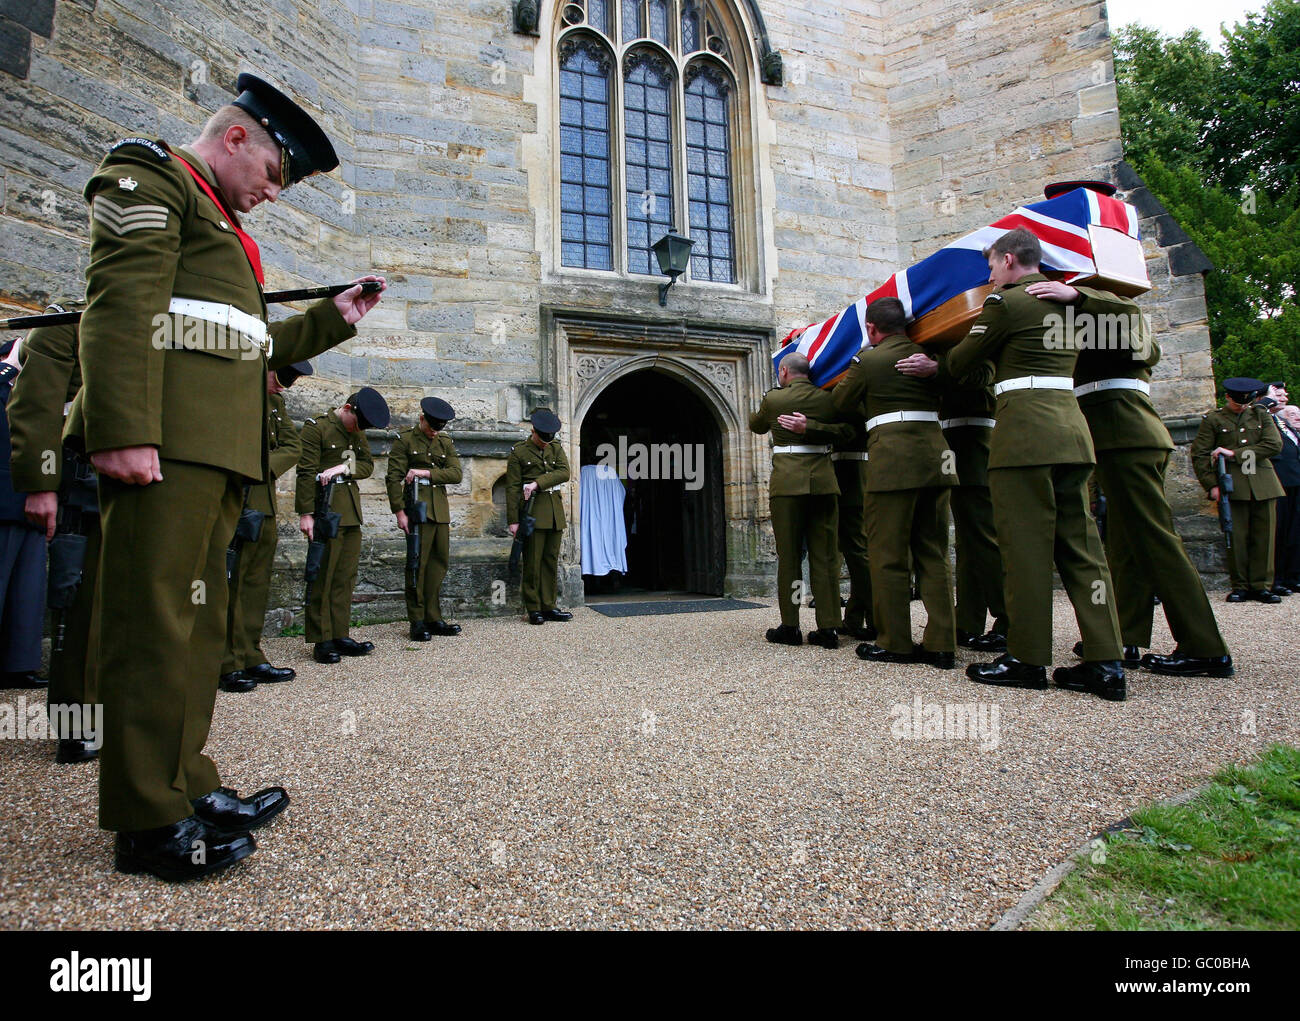 Der Sarg von Private John Brackpool betritt die St. John's Church in Crawley, West Sussex. Pte Brackpool, 27, von Prince of Wales's Company, 1. Bataillon Welsh Guards, starb am 9. Juli an einer Schusswunde nach einem Kampf mit Aufständischen in der Nähe von Lashkar Gah. Stockfoto